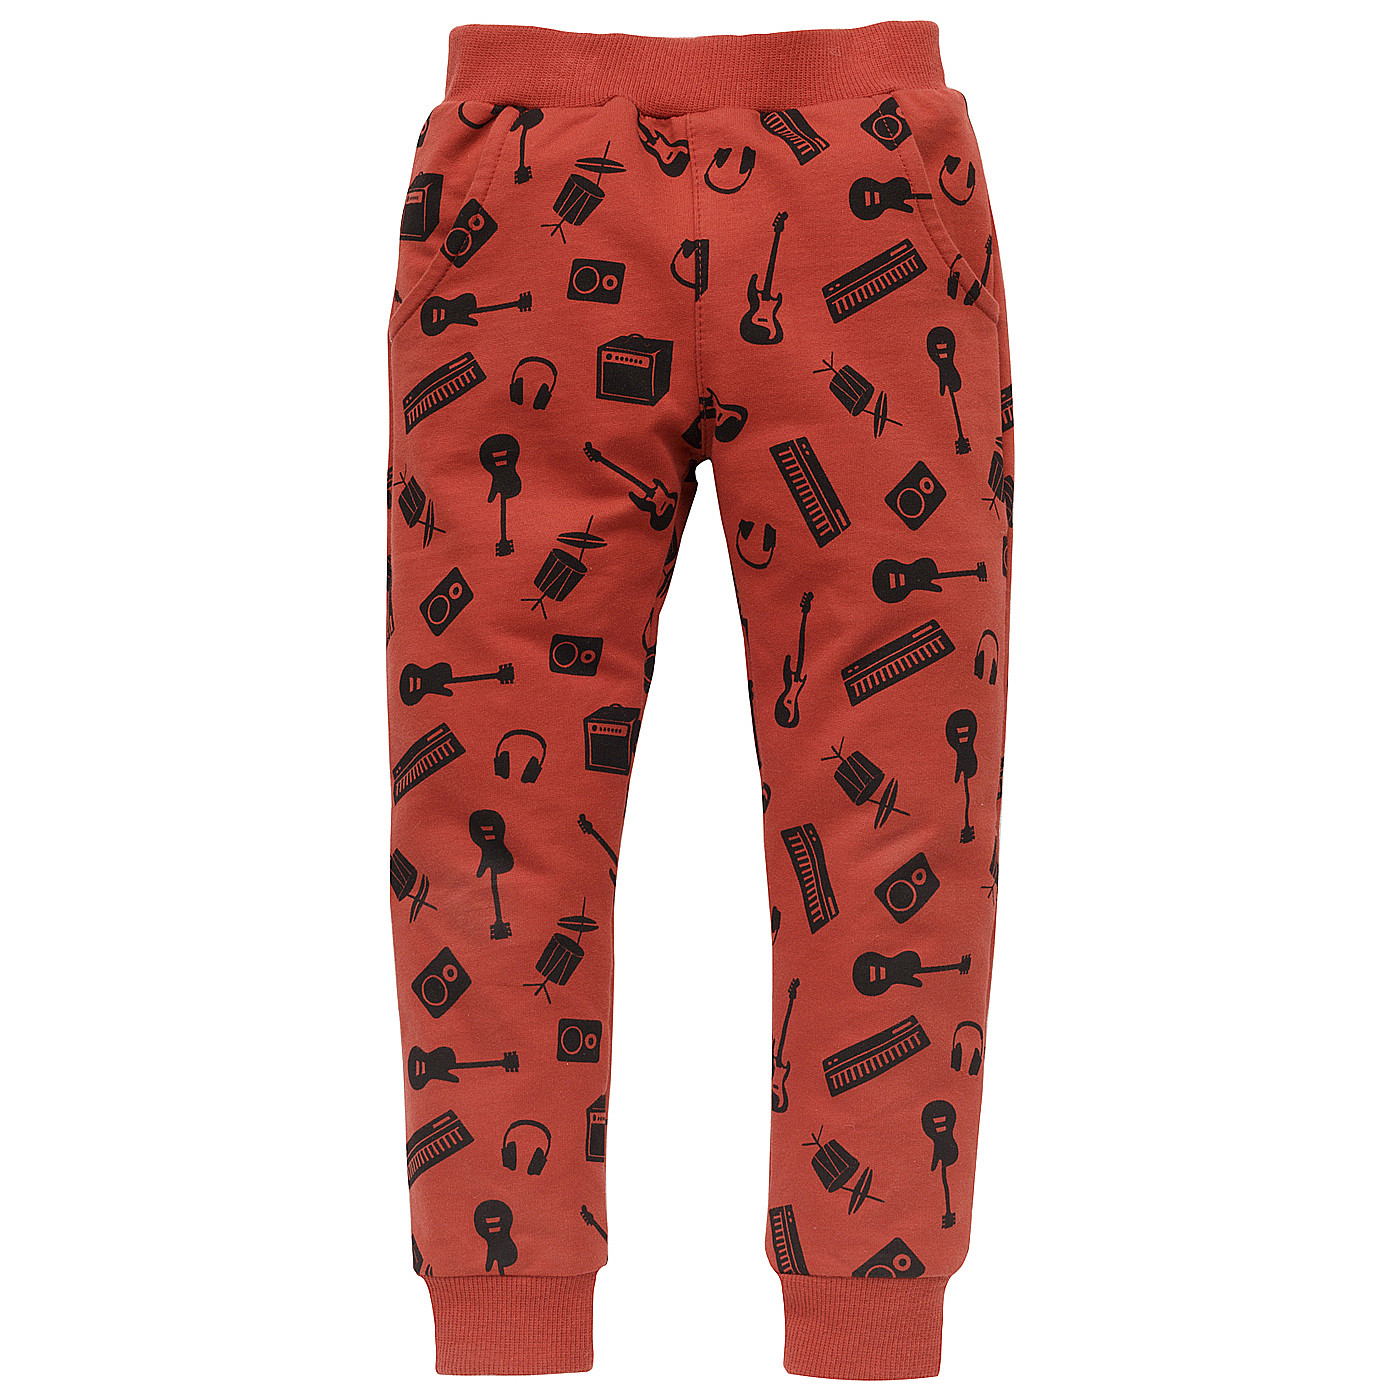 Pinokio Let's Rock Pants Red (Červené kalhoty) 98